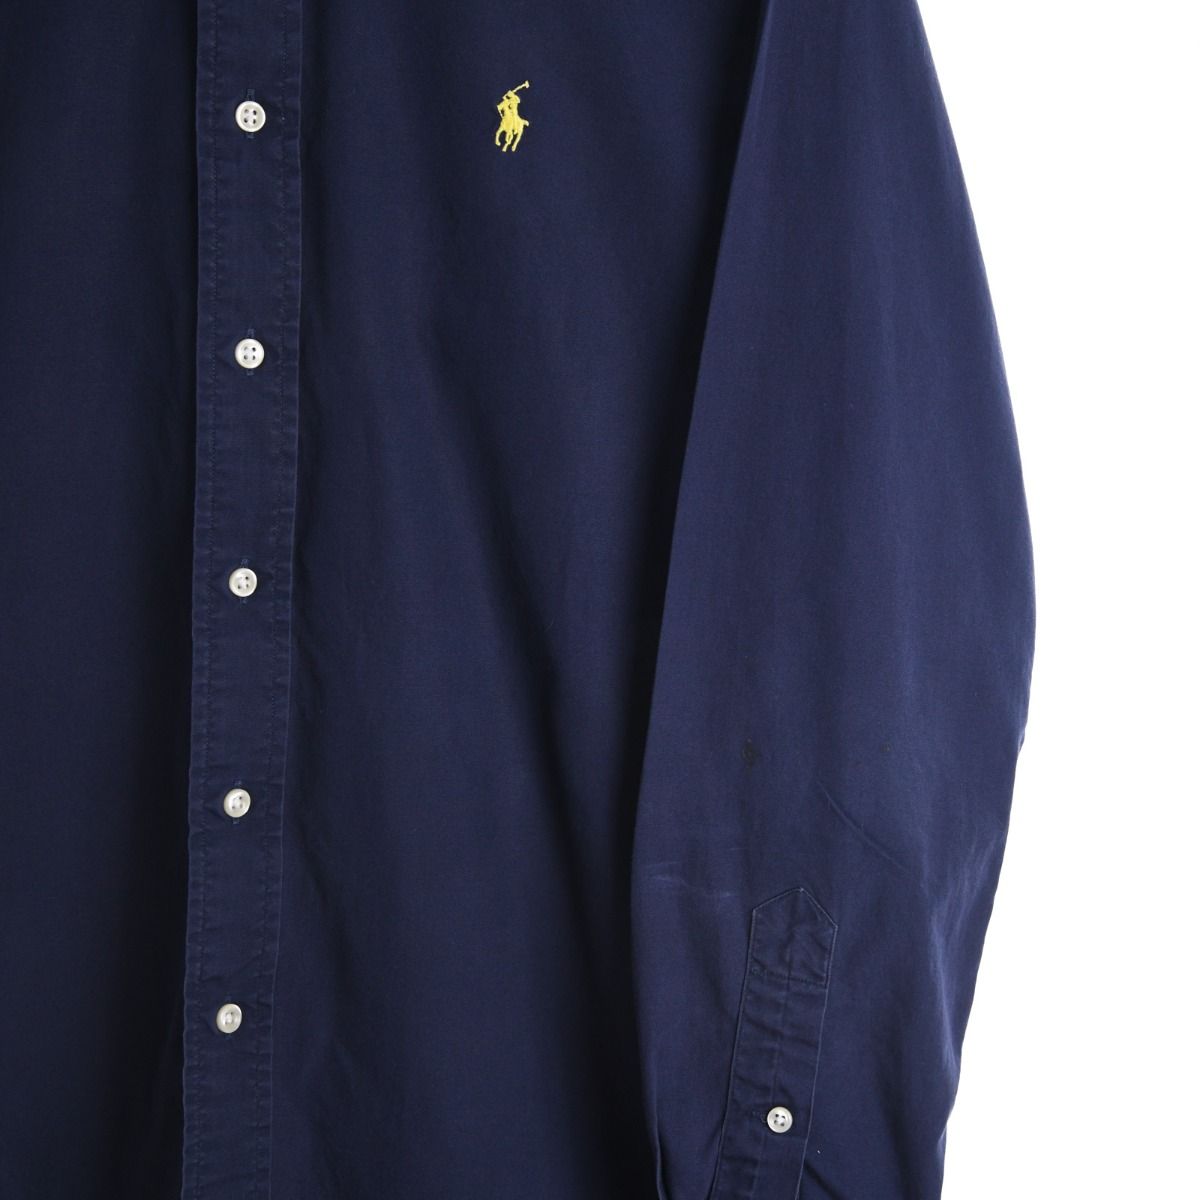 Ralph Lauren Navy Blue Shirt